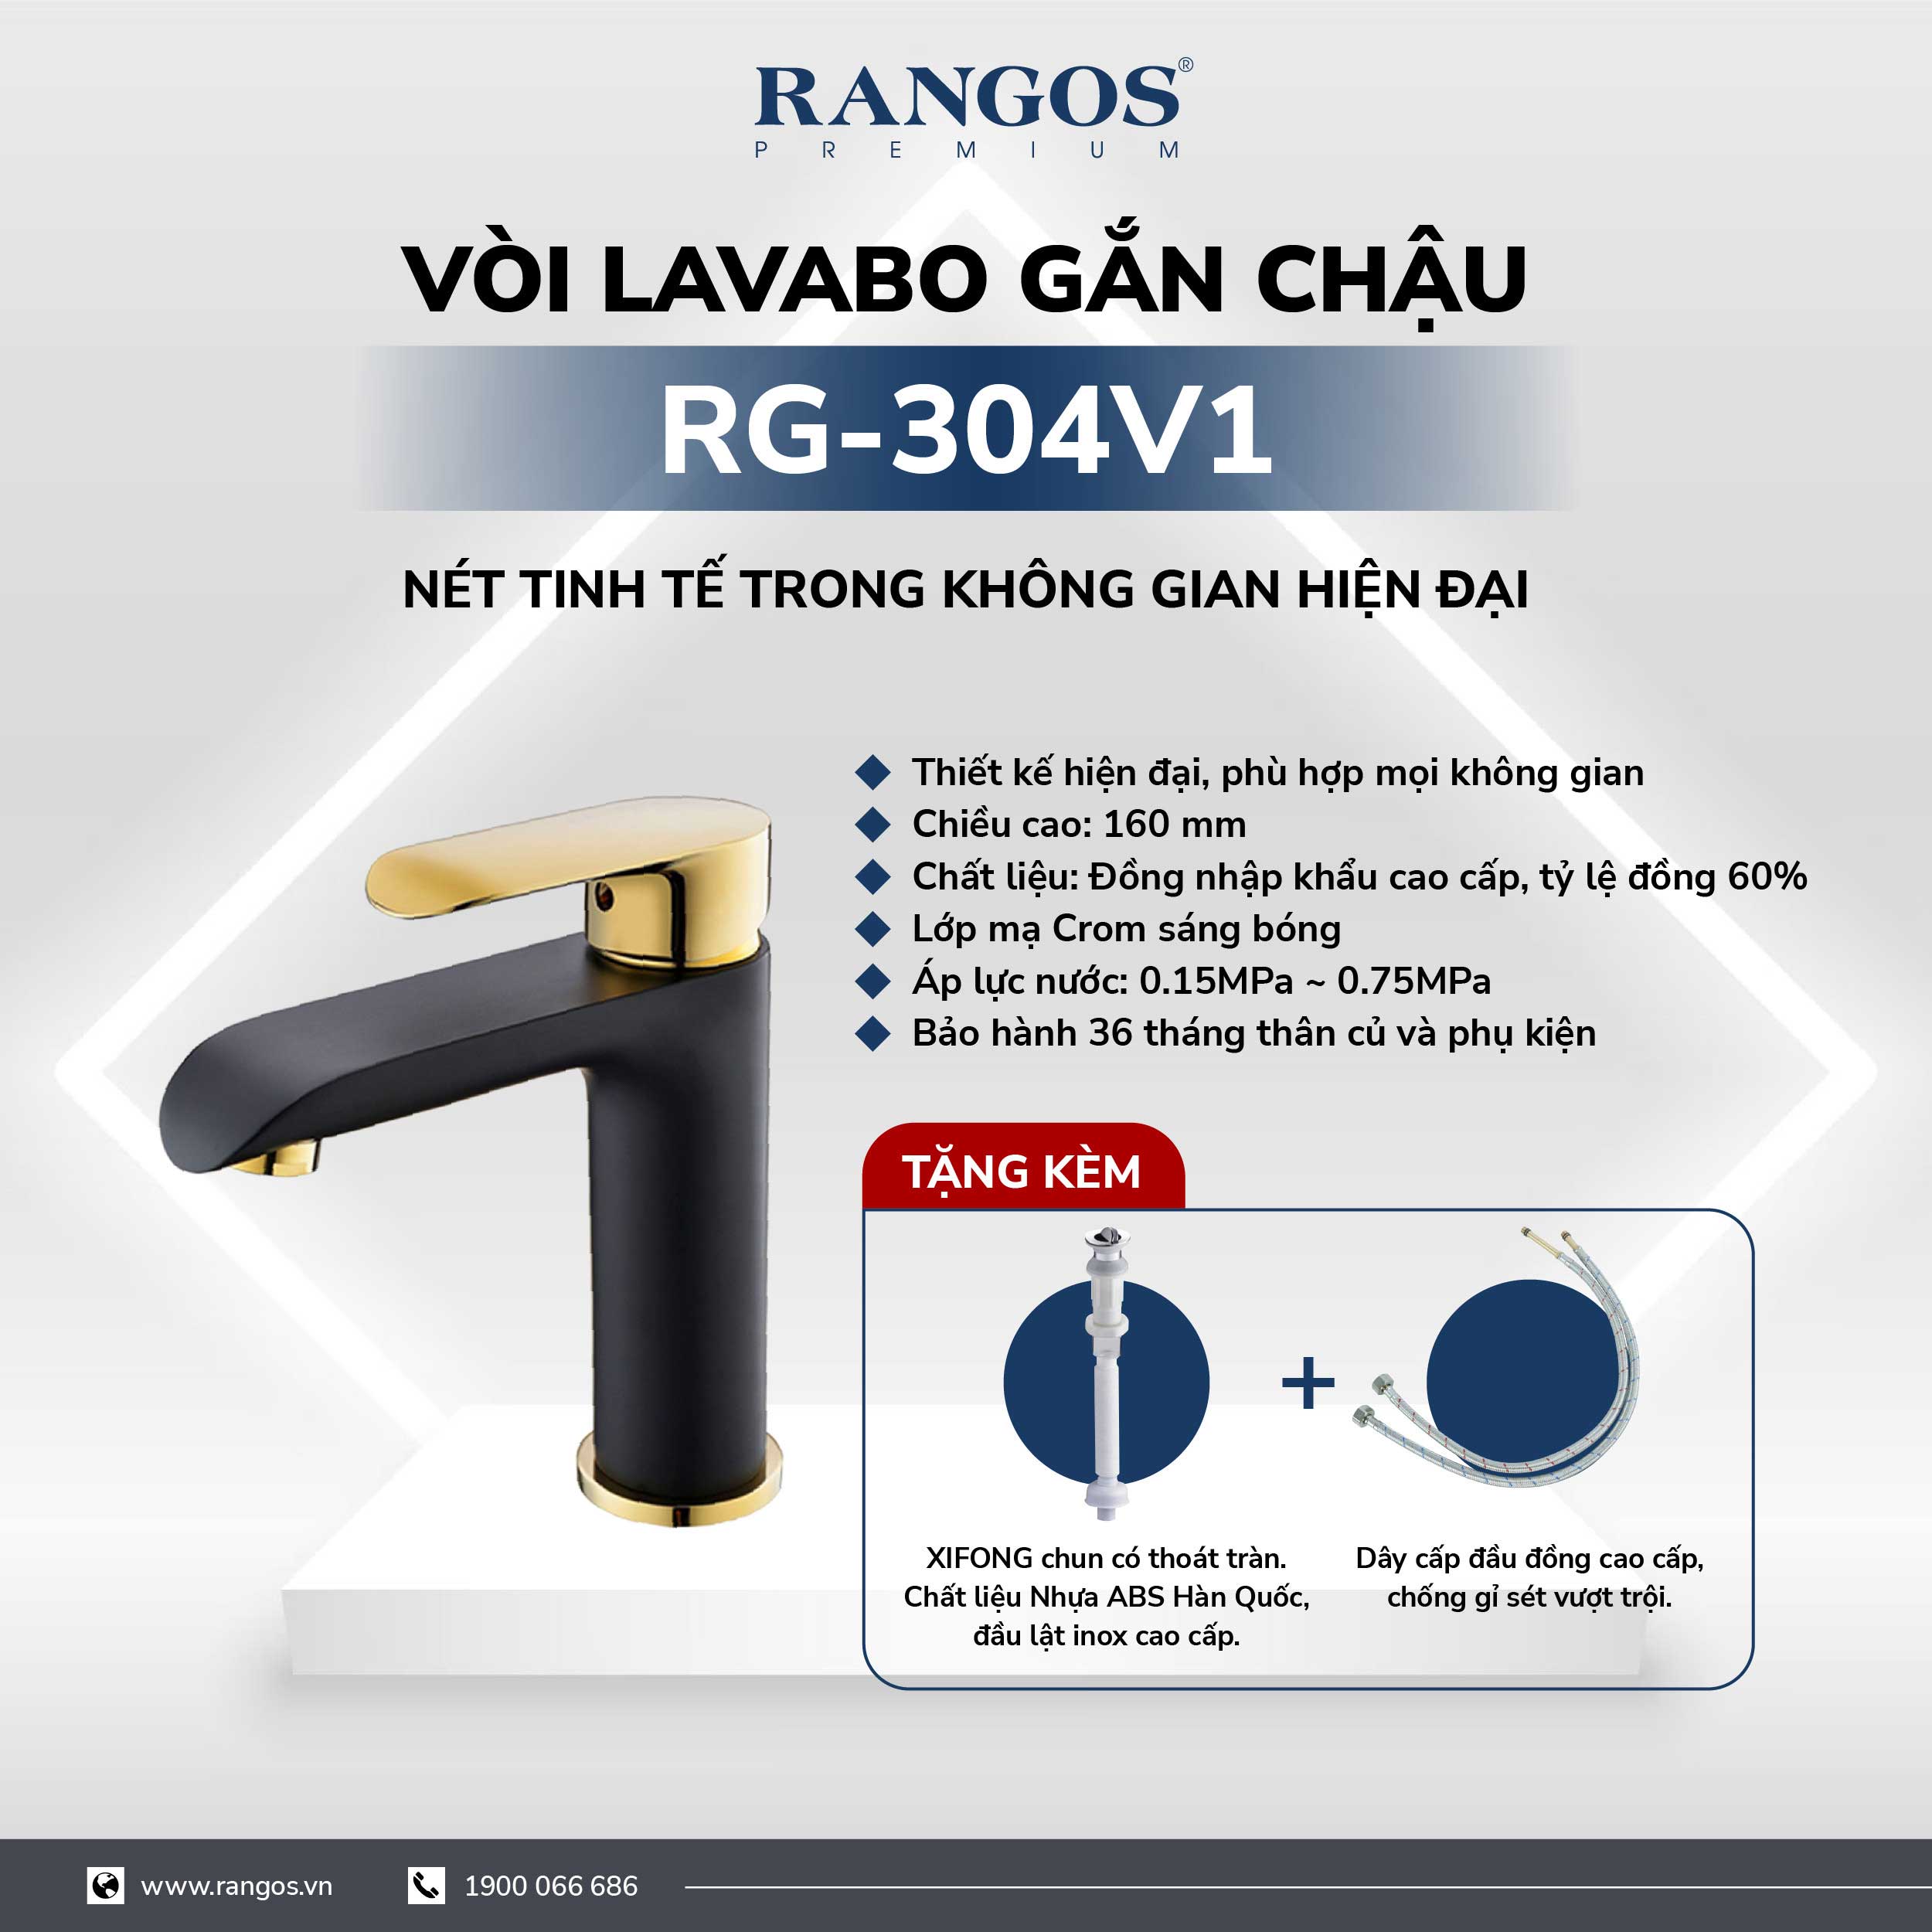 Bộ vòi lavabo gắn chậu Rangos RG-304V1